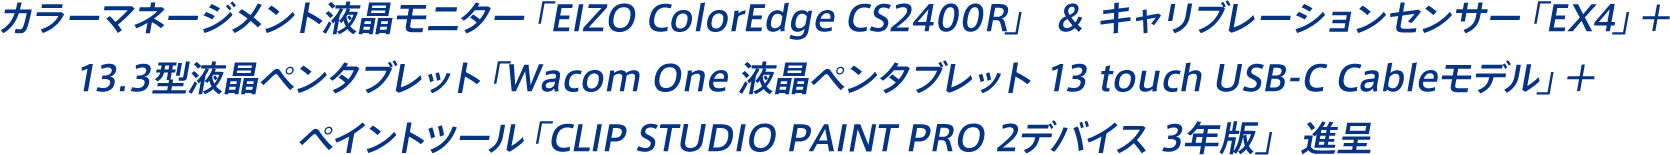 カラーマネージメント液晶モニター「EIZO ColorEdge CS2400R」 ＆ キャリブレーションセンサー「EX4」＋13.3型液晶ペンタブレット「Wacom One 液晶ペンタブレット 13 touch USB-C Cableモデル」＋ペイントツール「CLIP STUDIO PAINT PRO 2デバイス 3年版」進呈